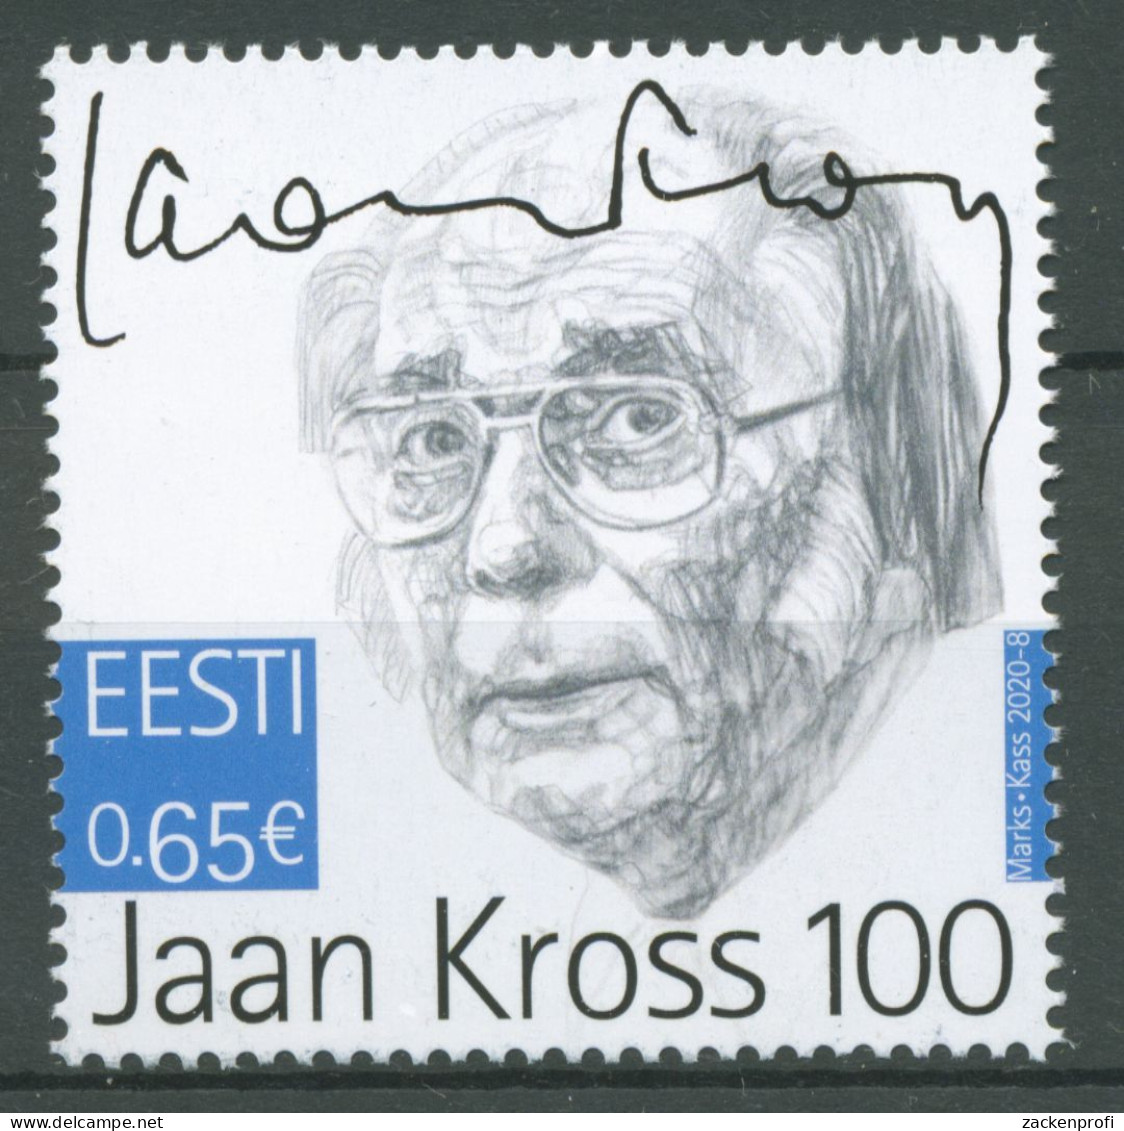 Estland 2020 Persönlichkeiten Schriftsteller Jaan Kross 978 Postfrisch - Estland